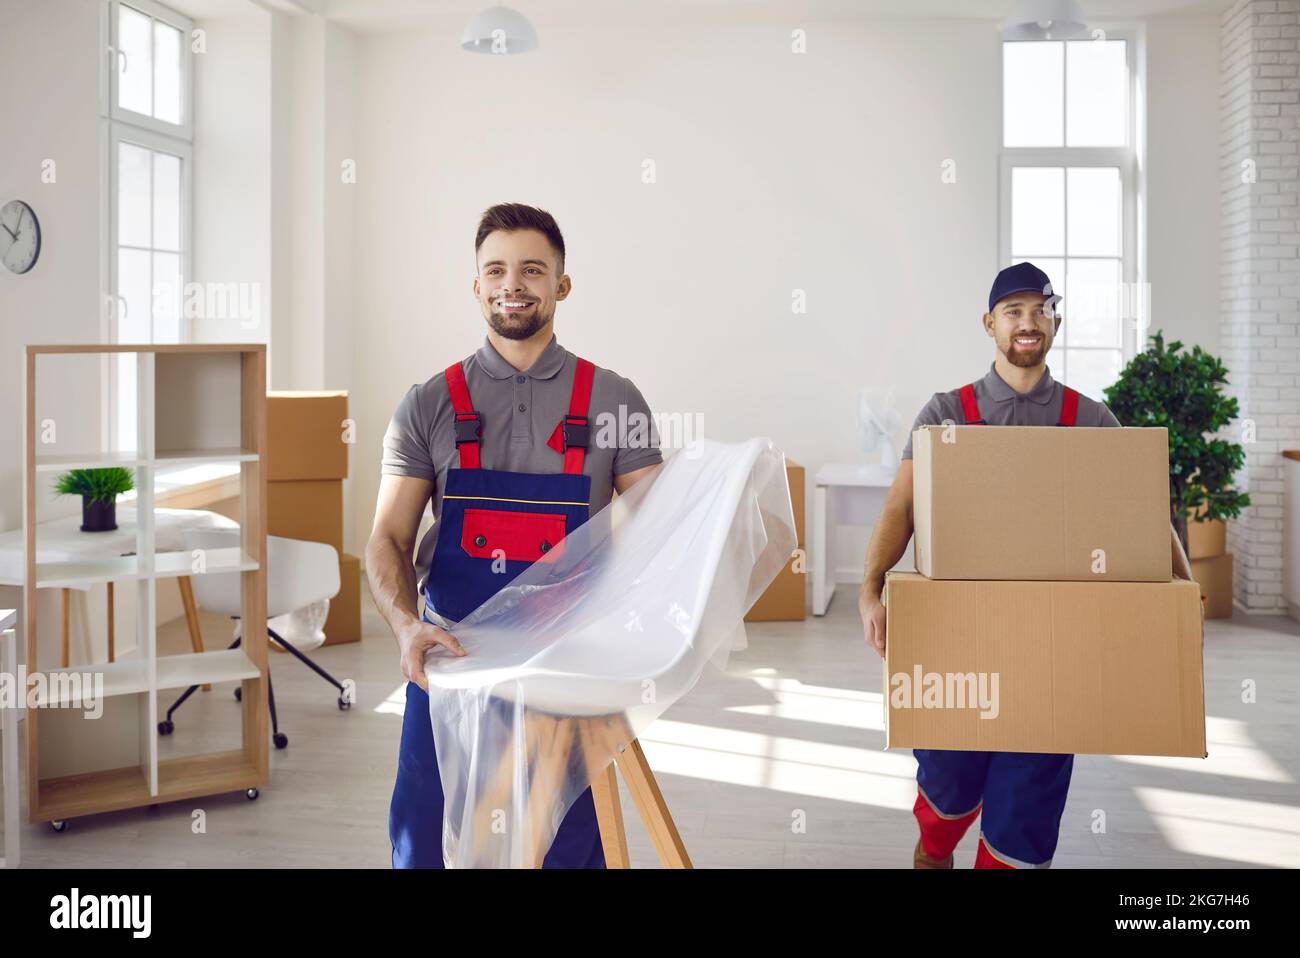 Dos hombres del servicio de reparto sacando muebles y cajas de cartón de la casa Foto de stock